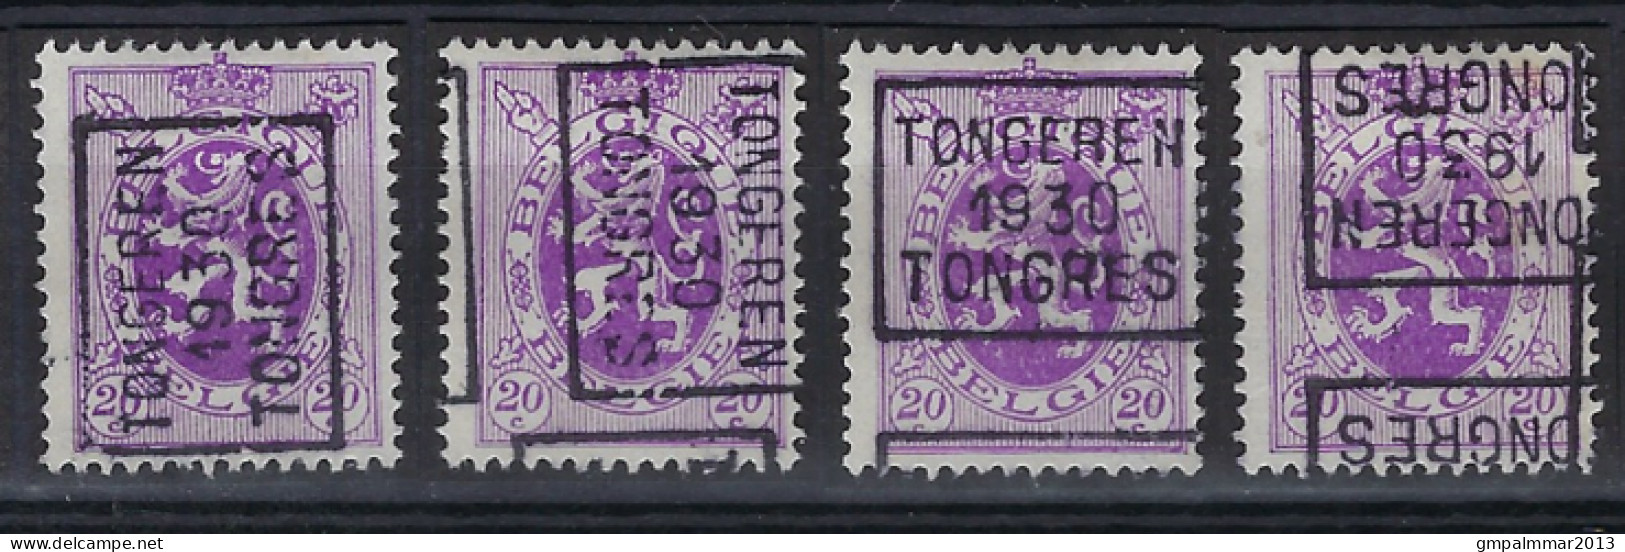 Zegel Nr. 281 Voorafgestempeld Nr. 5907 A + B + C + D TONGEREN 1930 TONGRES ; Staat Zie Scan ! - Rollenmarken 1930-..